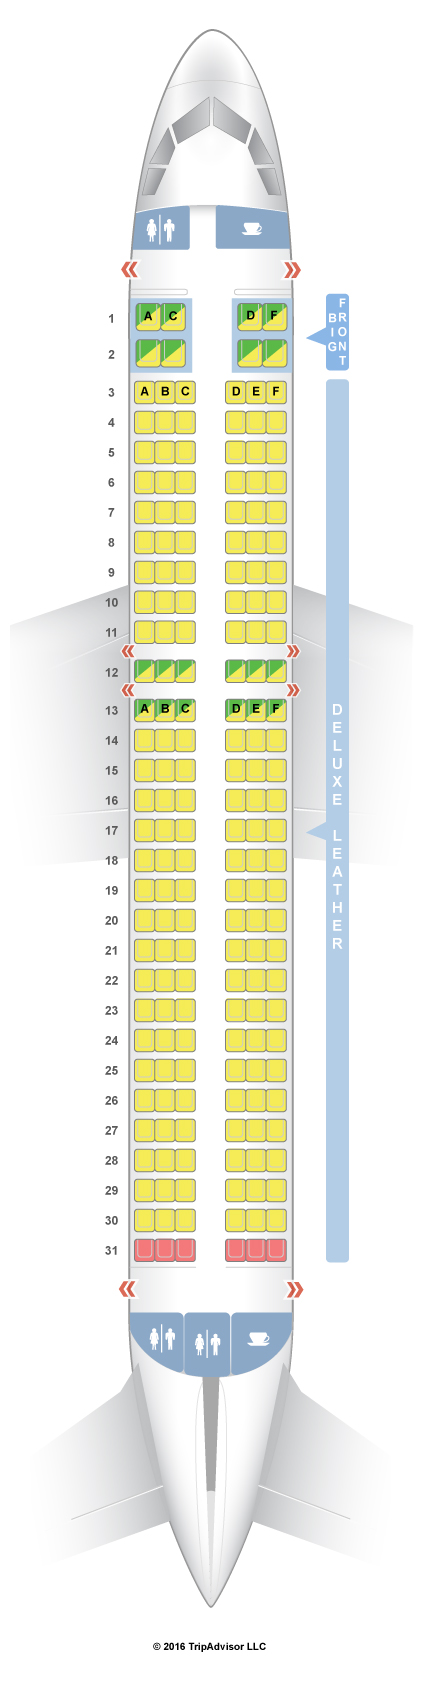 Plane Seating Chart Spirit